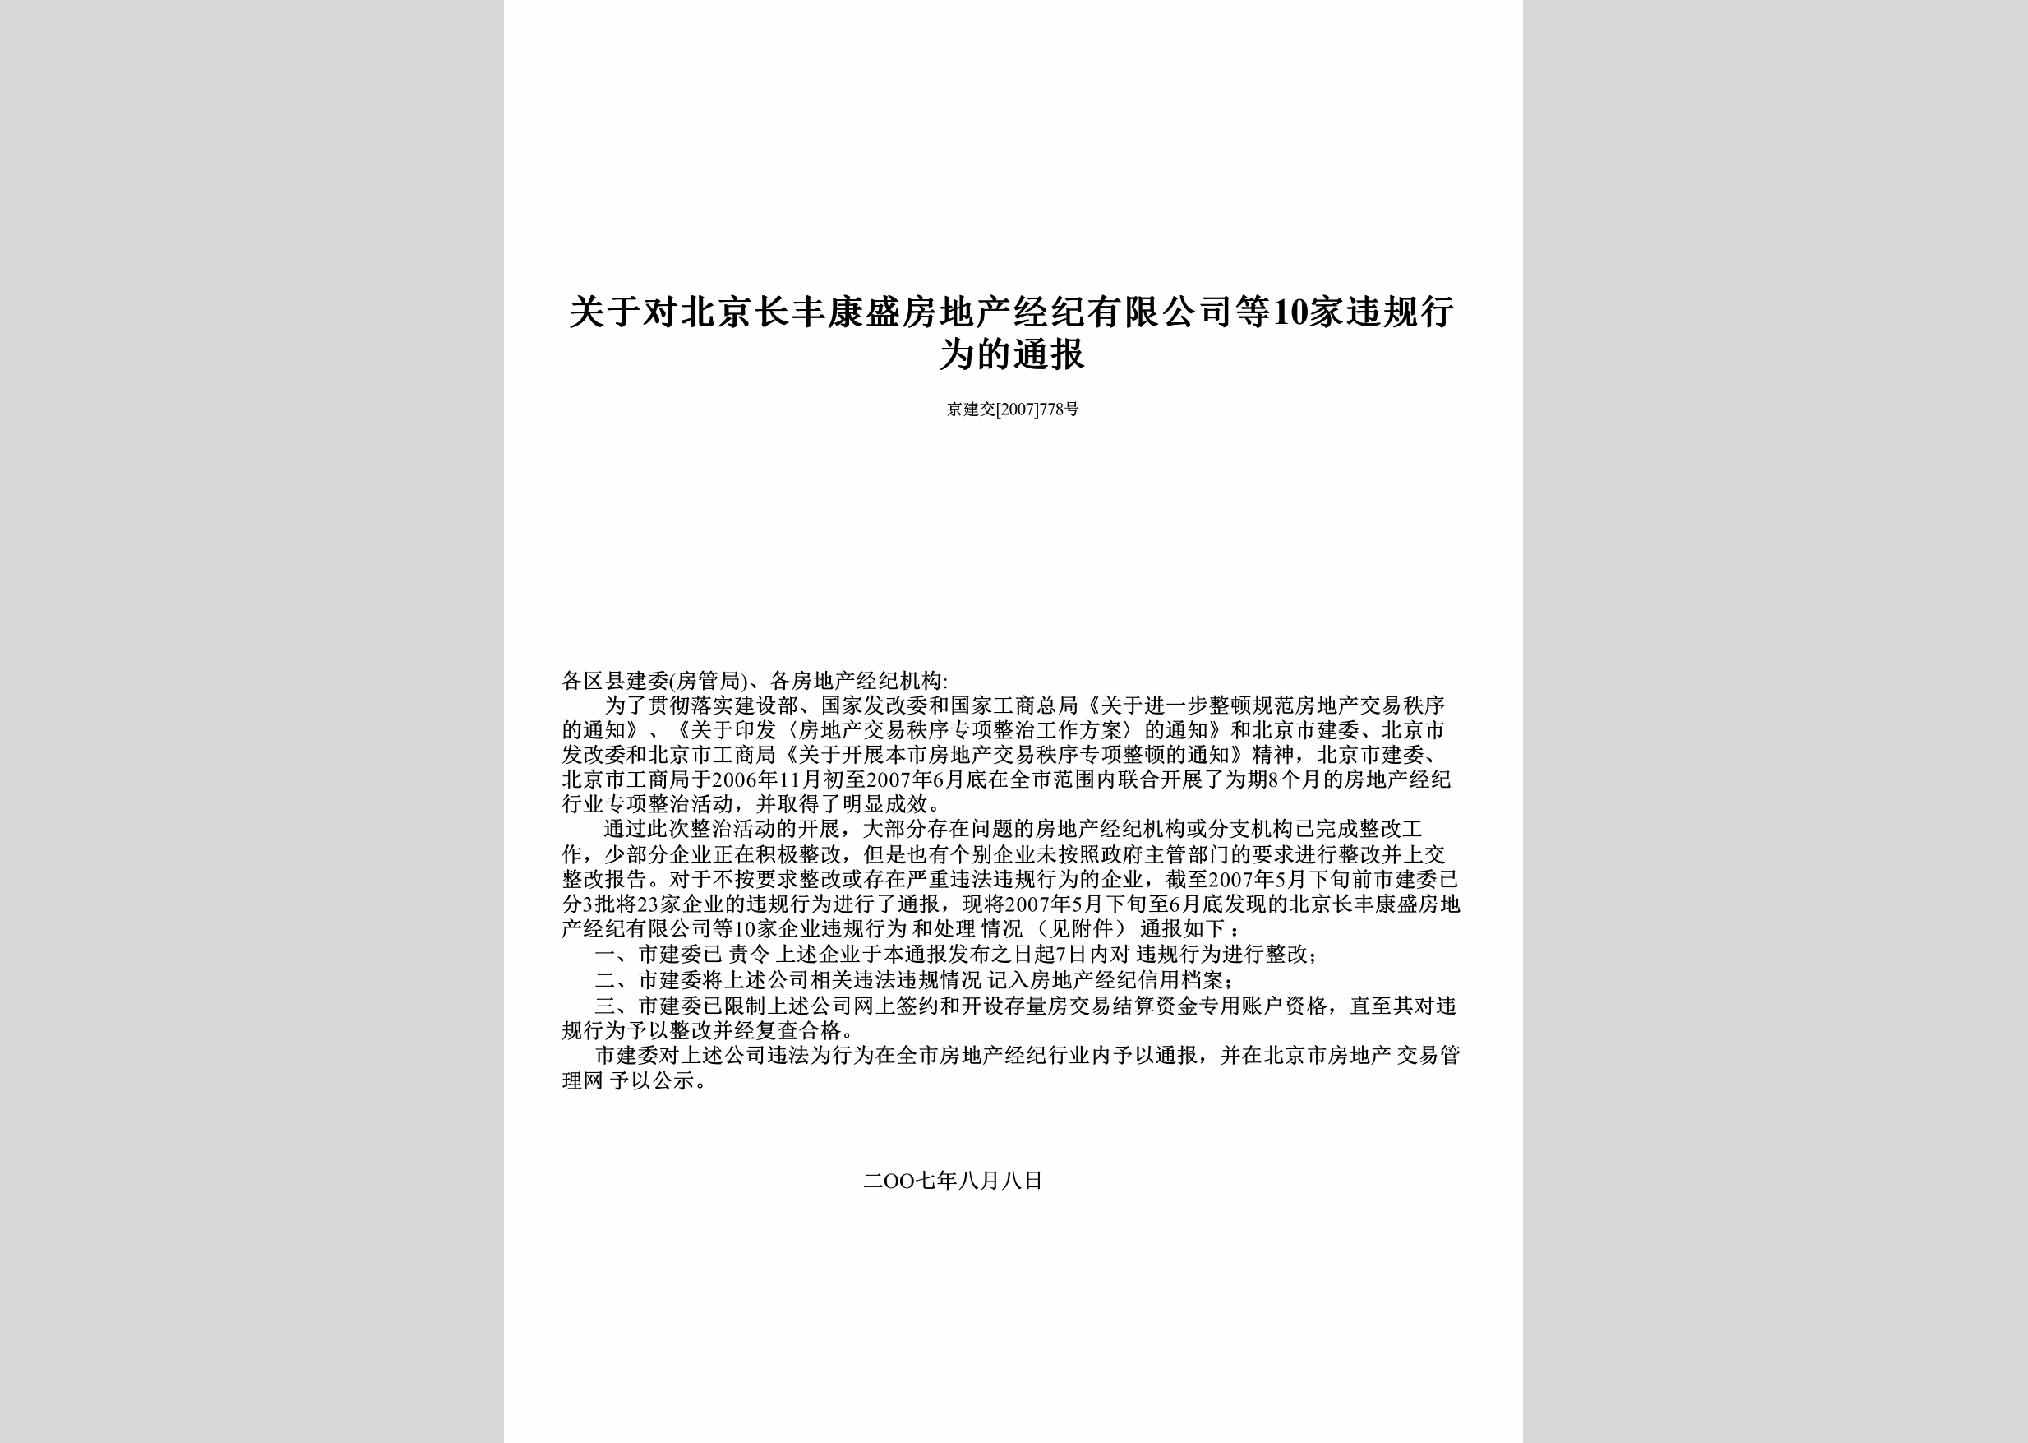 京建交[2007]778号：关于对北京长丰康盛房地产经纪有限公司等10家违规行为的通报